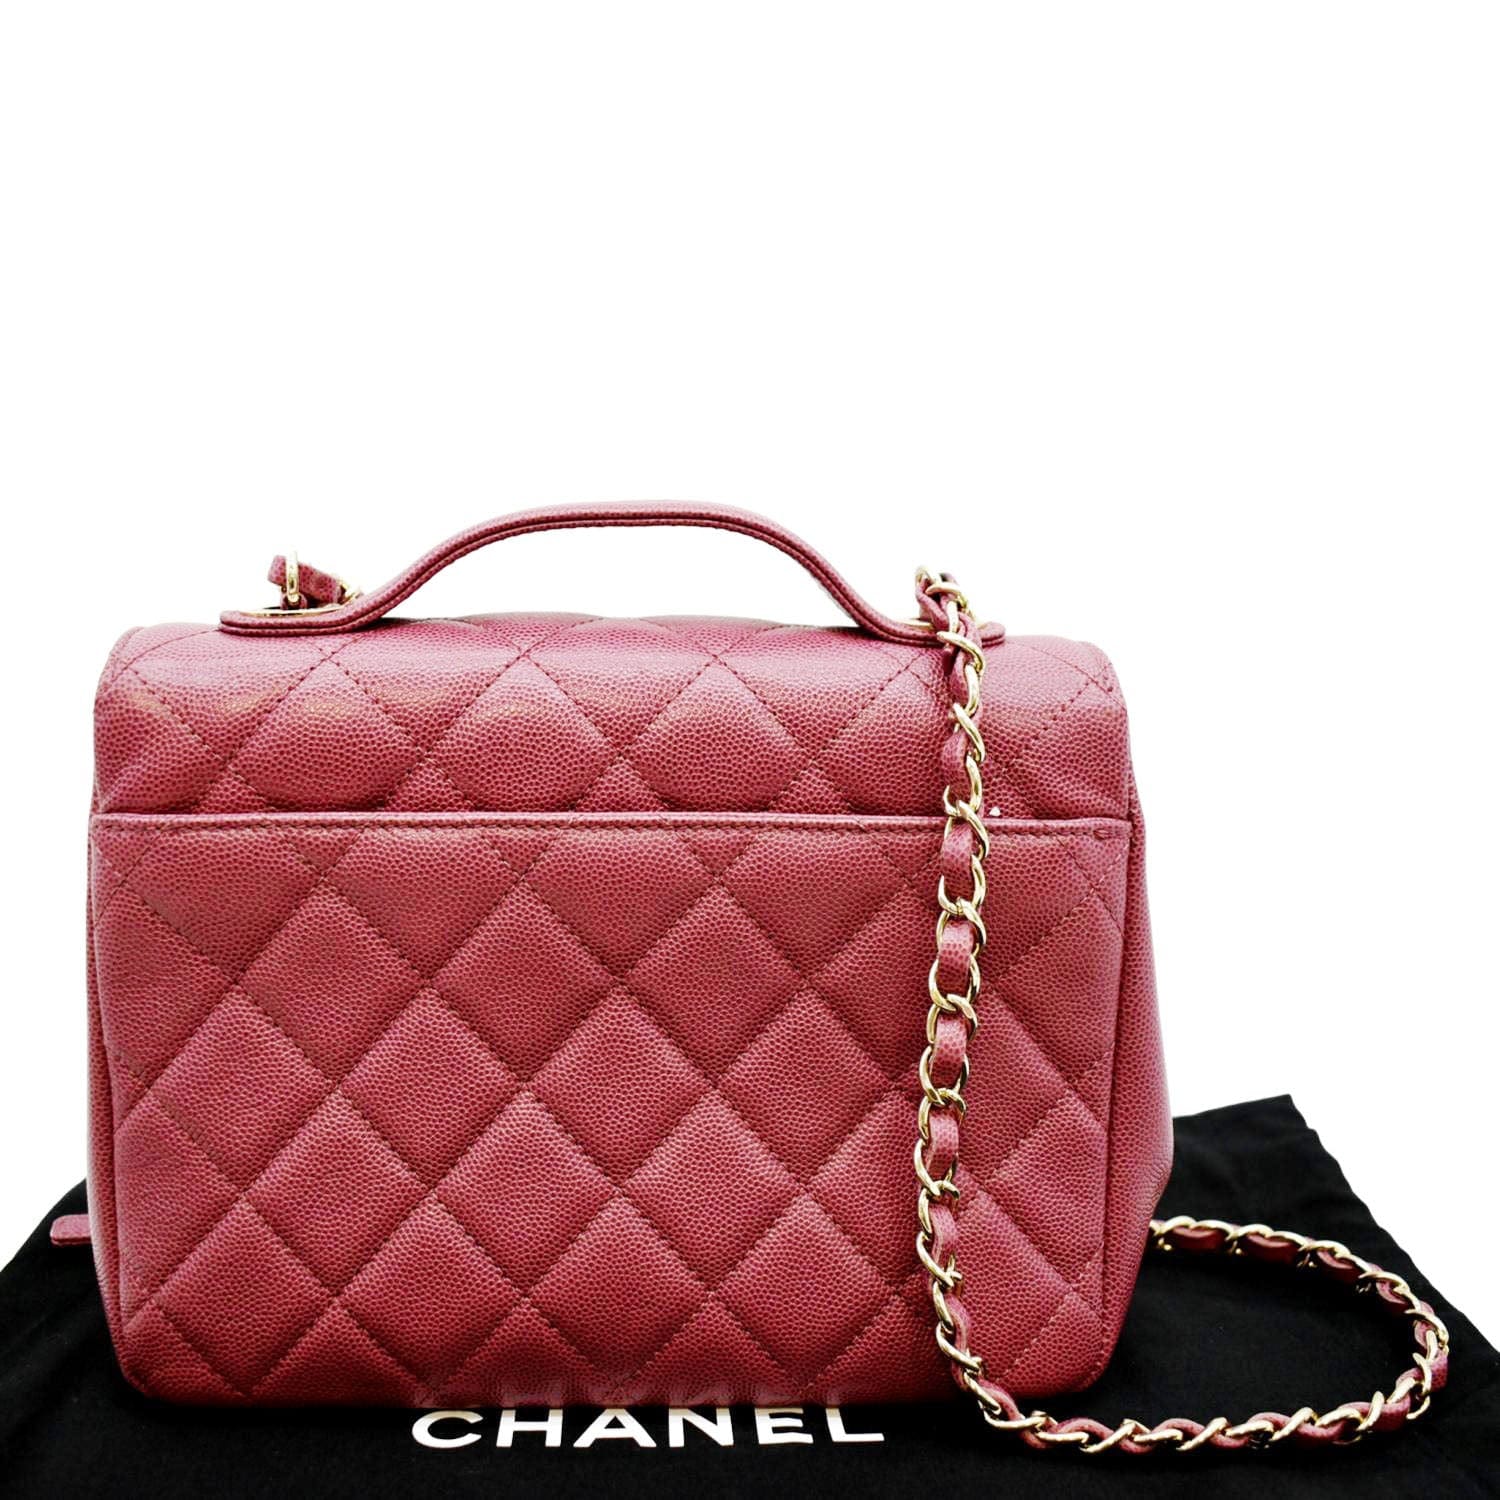 Chanel Business Affinity Medium Flap Shoulder Bag